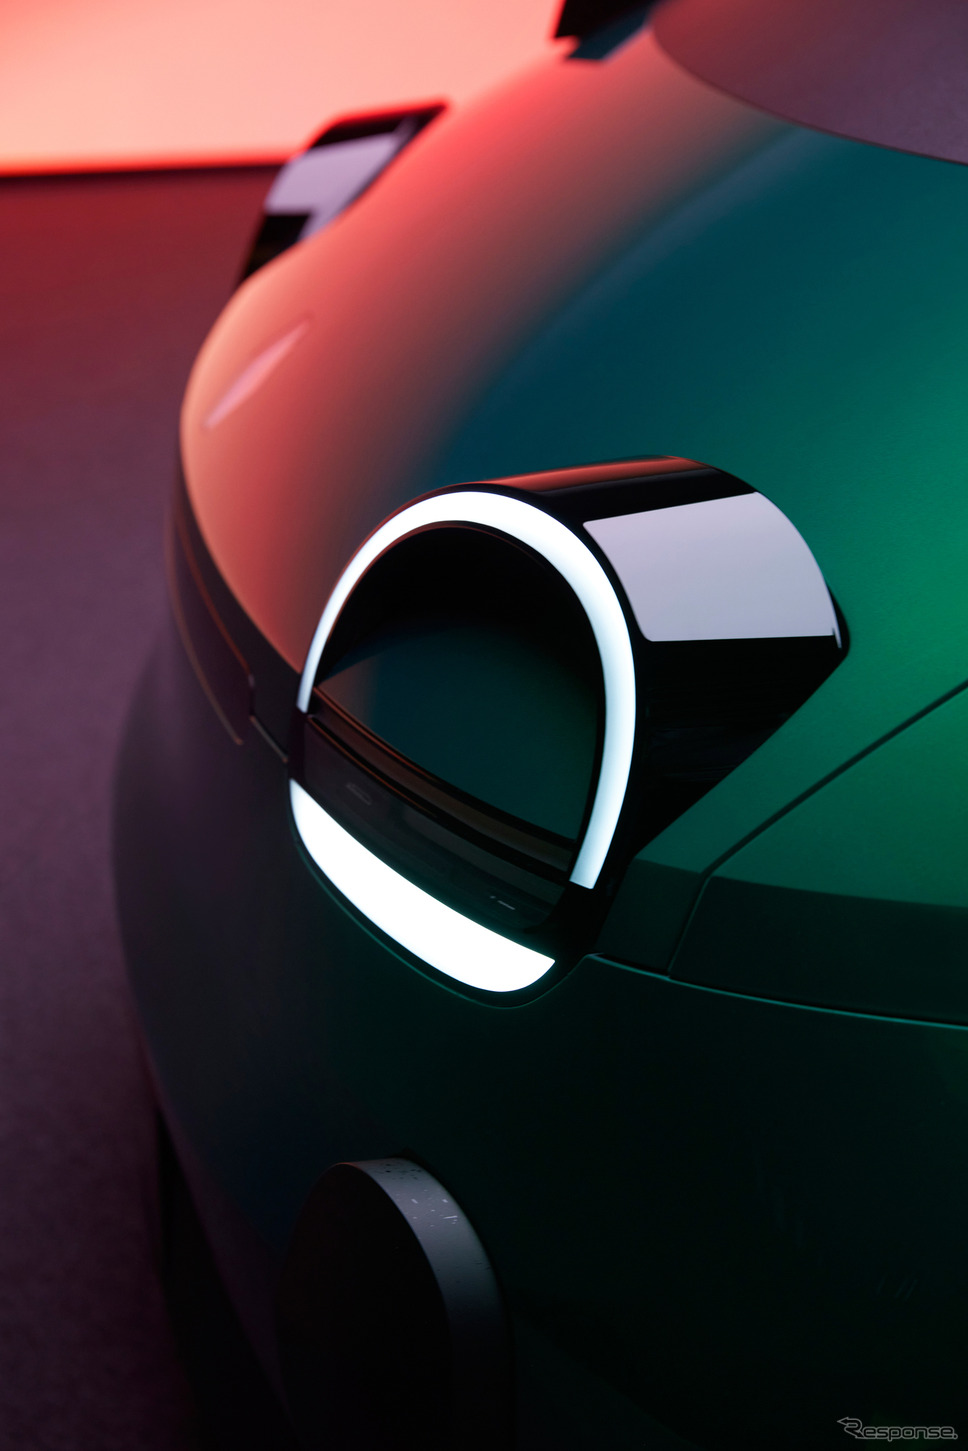 ルノー『トゥインゴ』次期型、初代の再来狙うデザイン…2万ユーロ以下のEVに《photo by Renault》